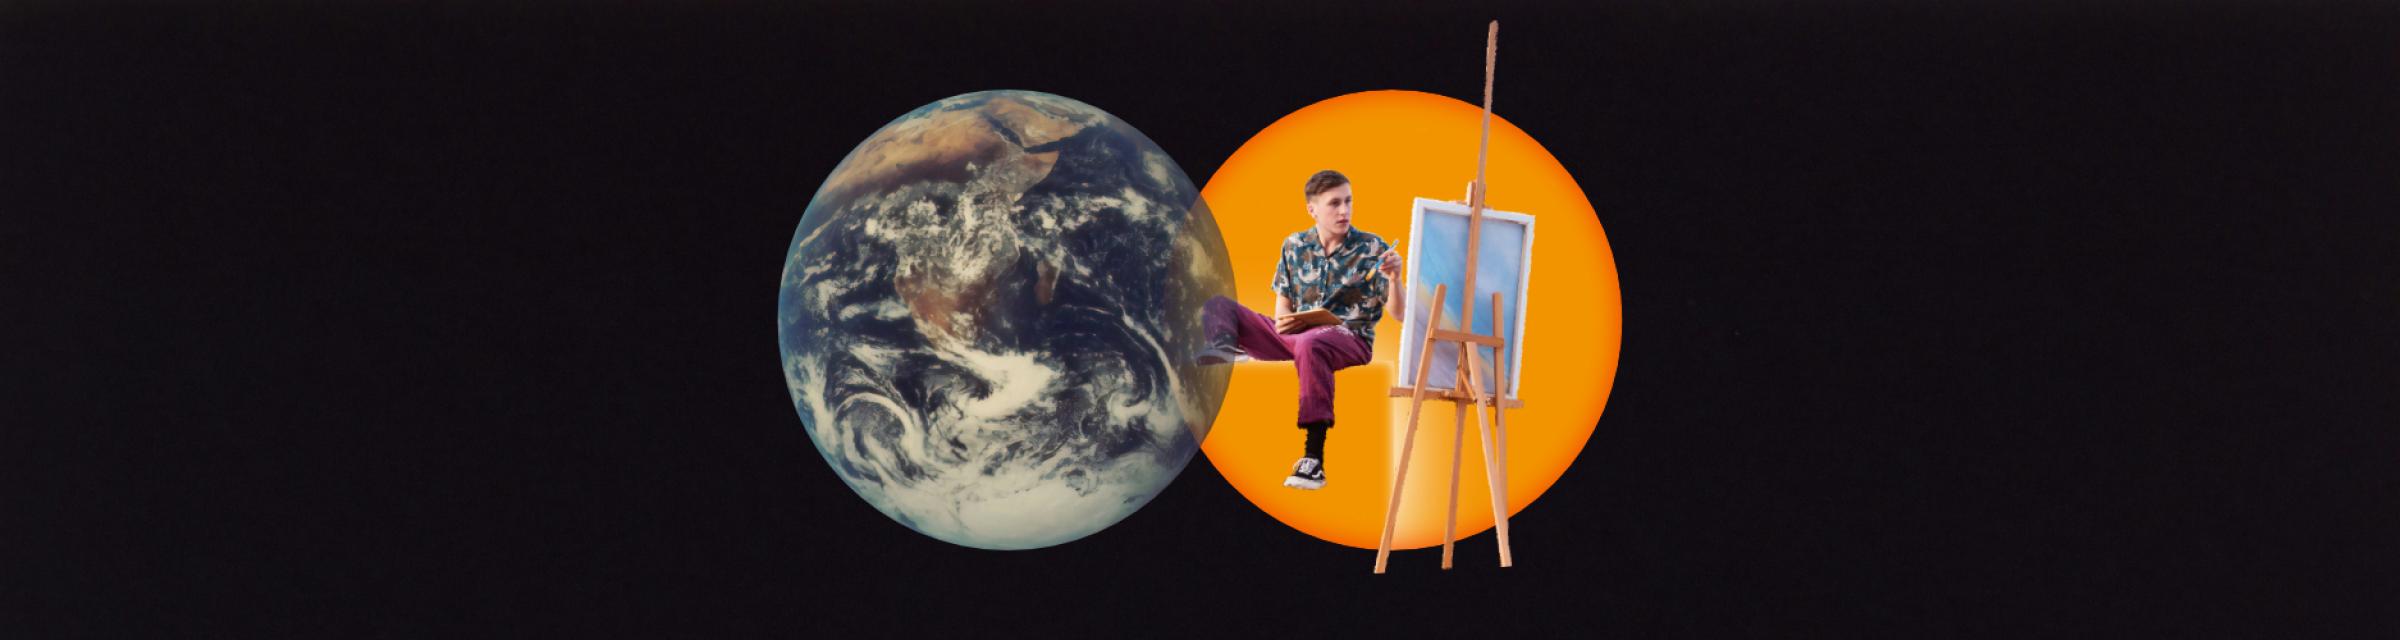 Weltkugel links, leicht überlappend rechts daneben sitzt ein Maler in einer gelben Kugel